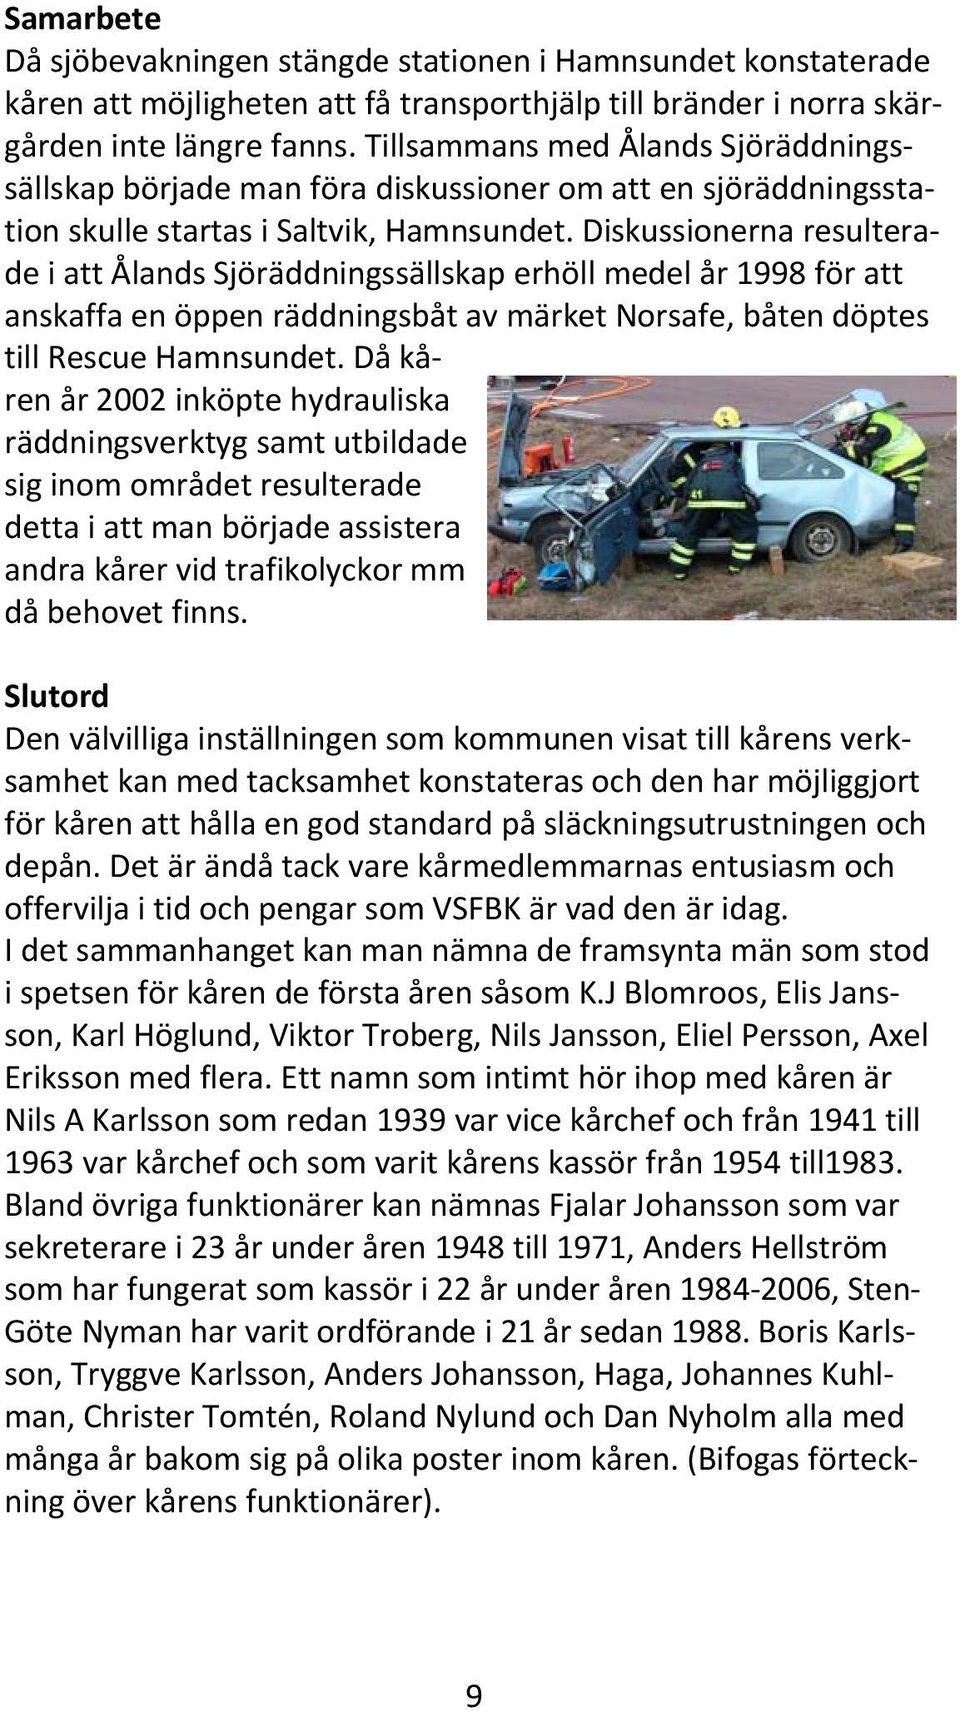 Diskussionerna resulterade i att Ålands Sjöräddningssällskap erhöll medel år 1998 för att anskaffa en öppen räddningsbåt av märket Norsafe, båten döptes till Rescue Hamnsundet.